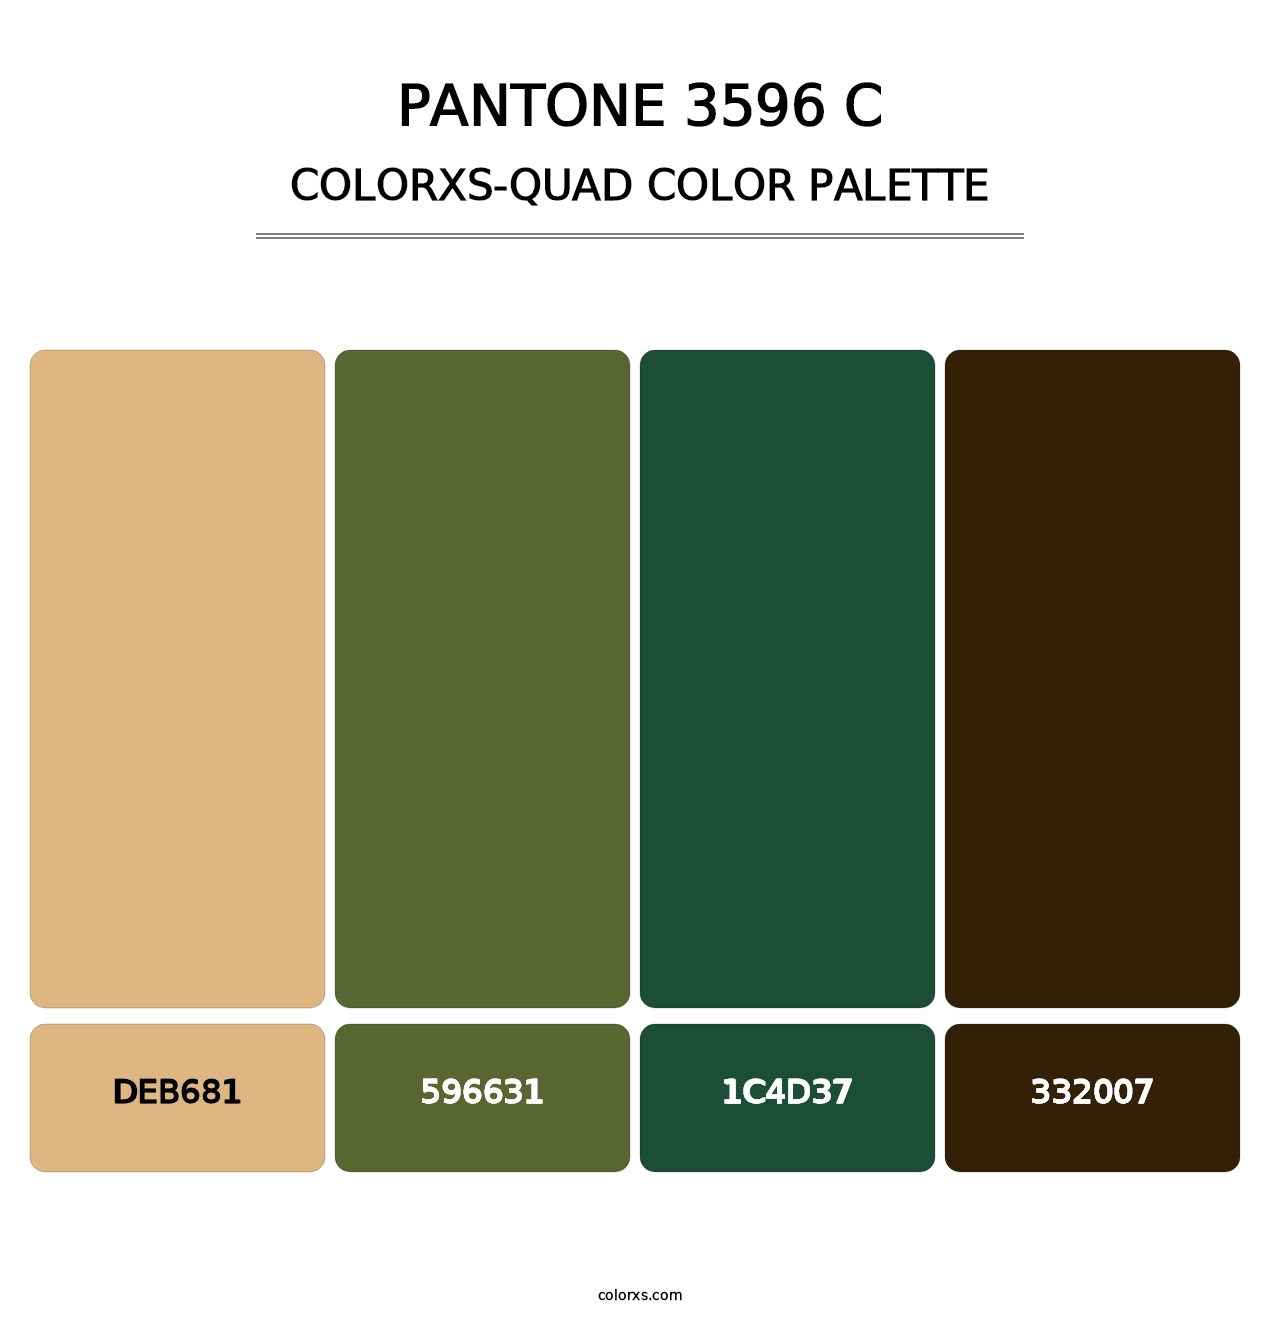 PANTONE 3596 C - Colorxs Quad Palette